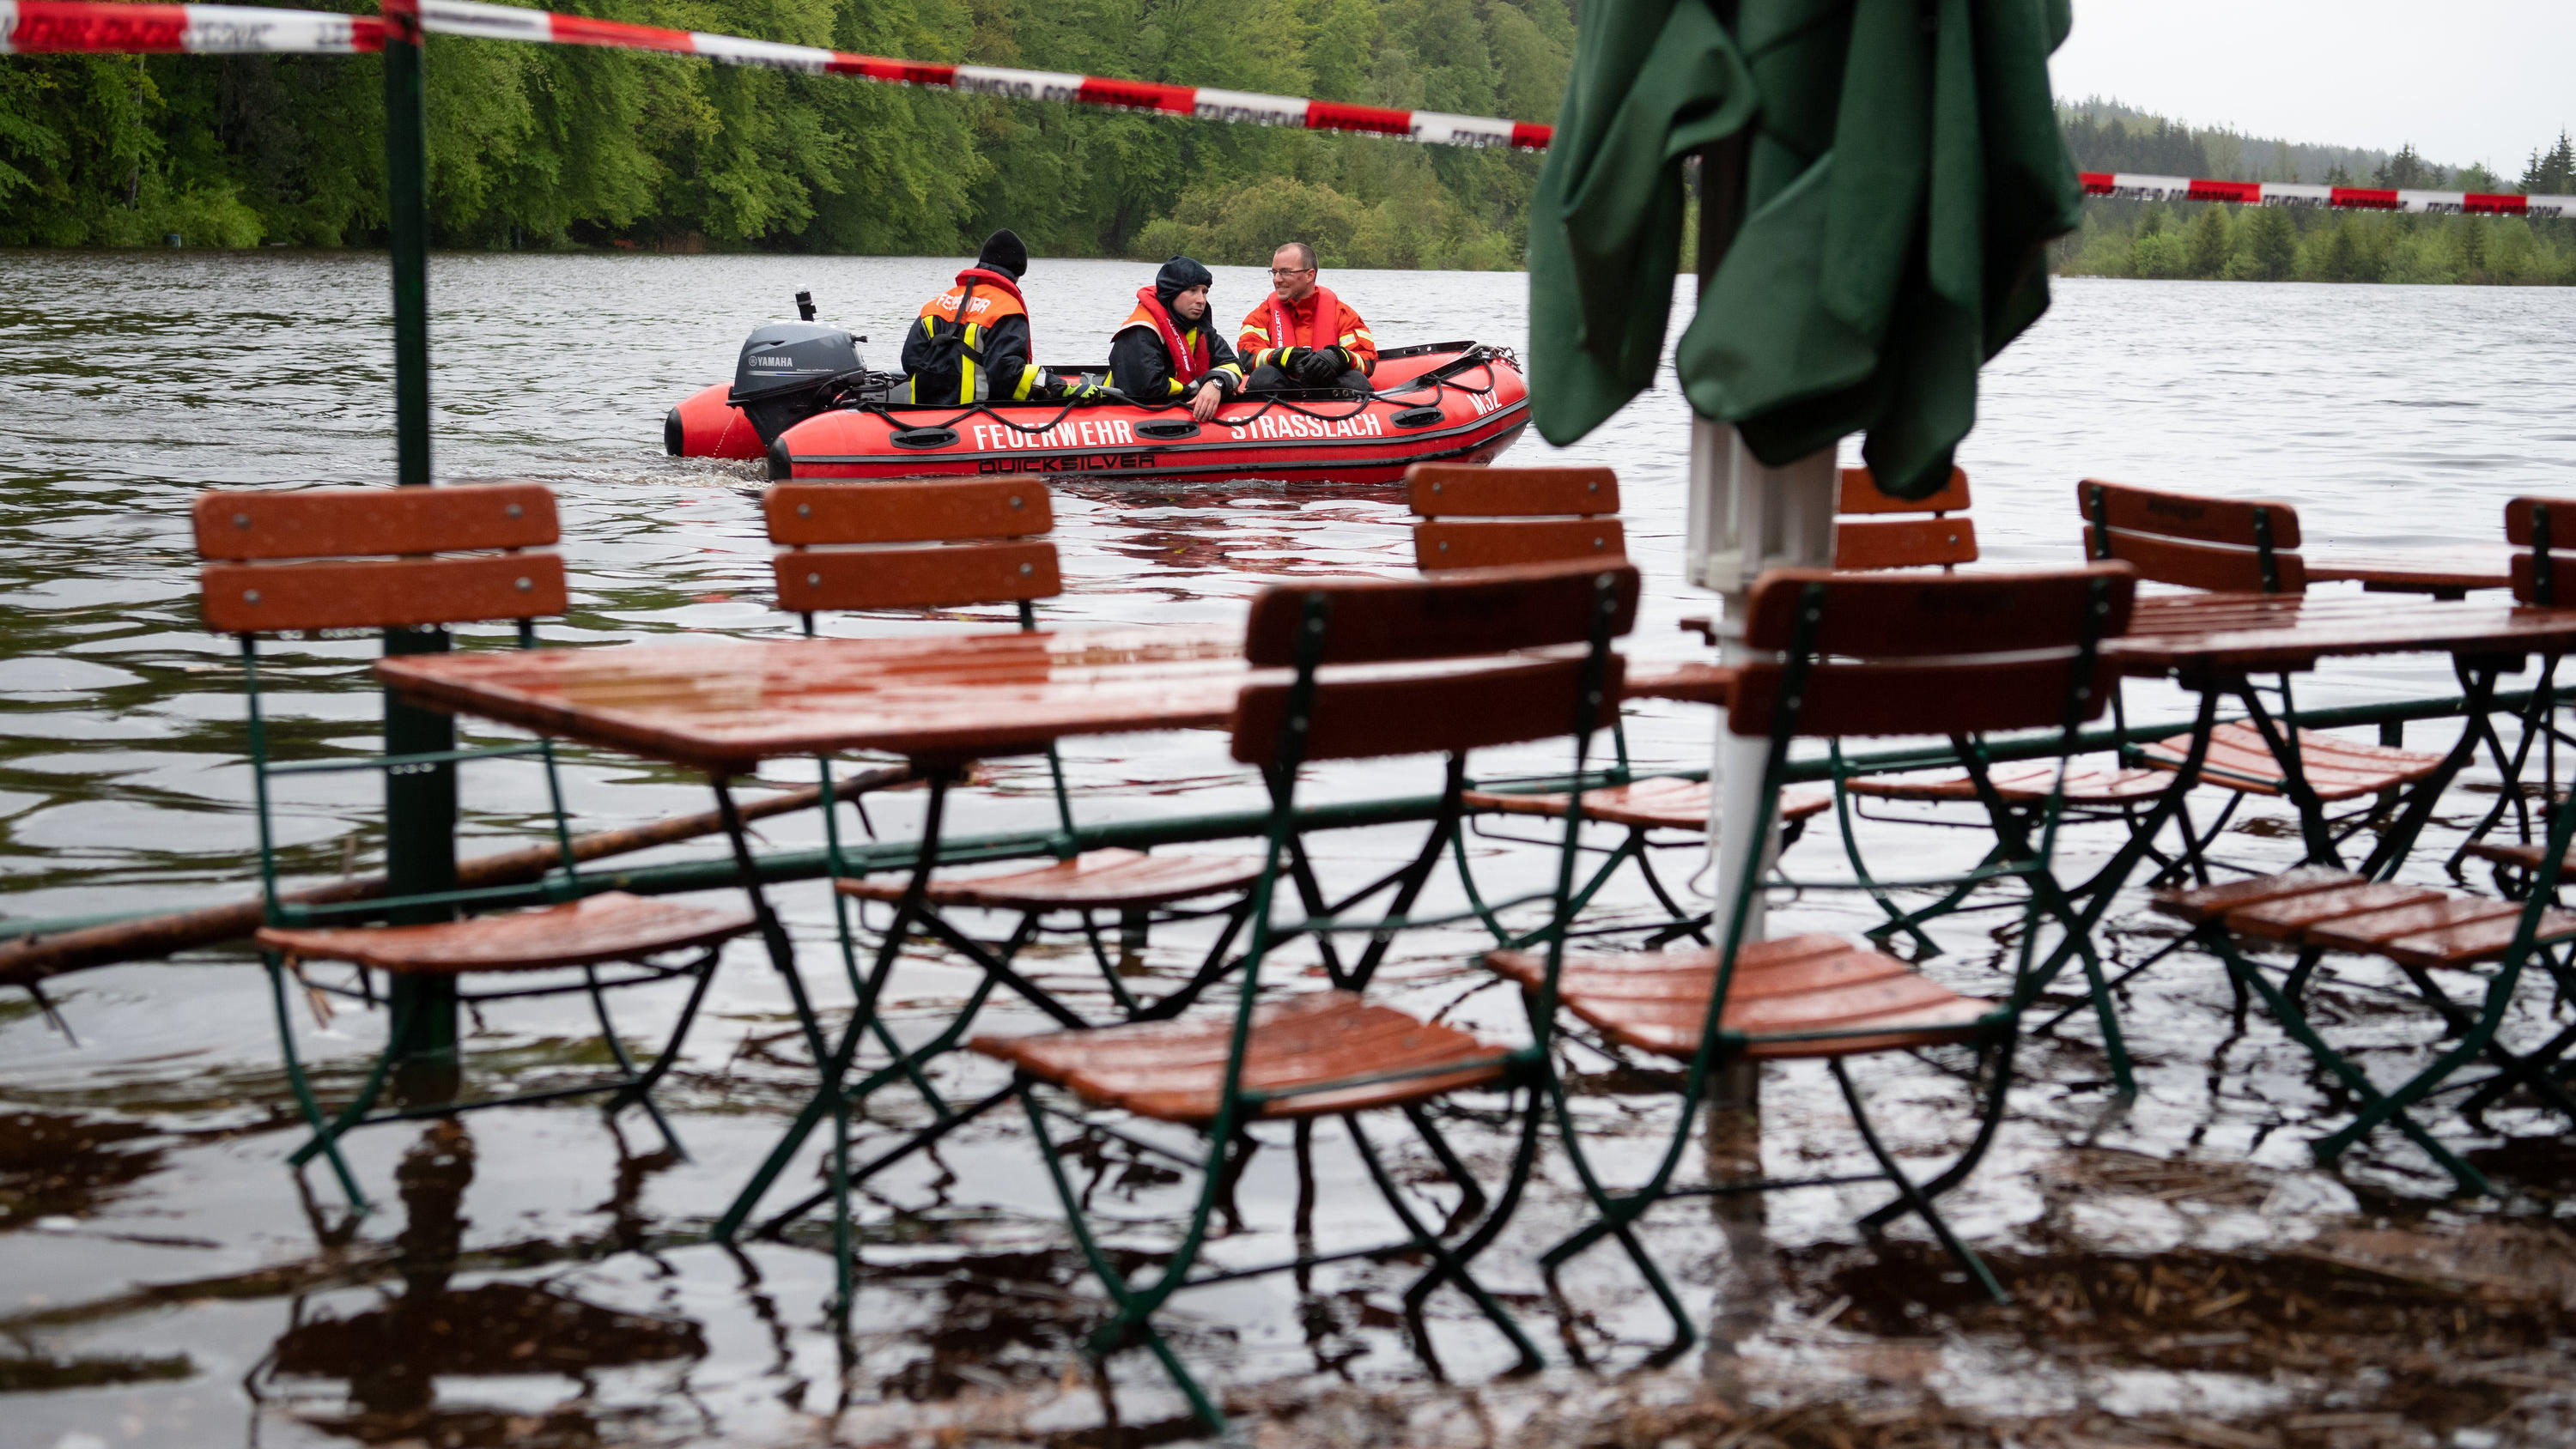 ARCHIV - 21.05.2019, Bayern, Straßlach: Feuerwehrmänner fahren mit einem Boot über den Deininger Weiher, der durch den starken Regen einen hohen Wasserstand hat und bereits einen Biergarten überflutet hat. (zu dpa «Studie: Klimawandel verschärft Hoch